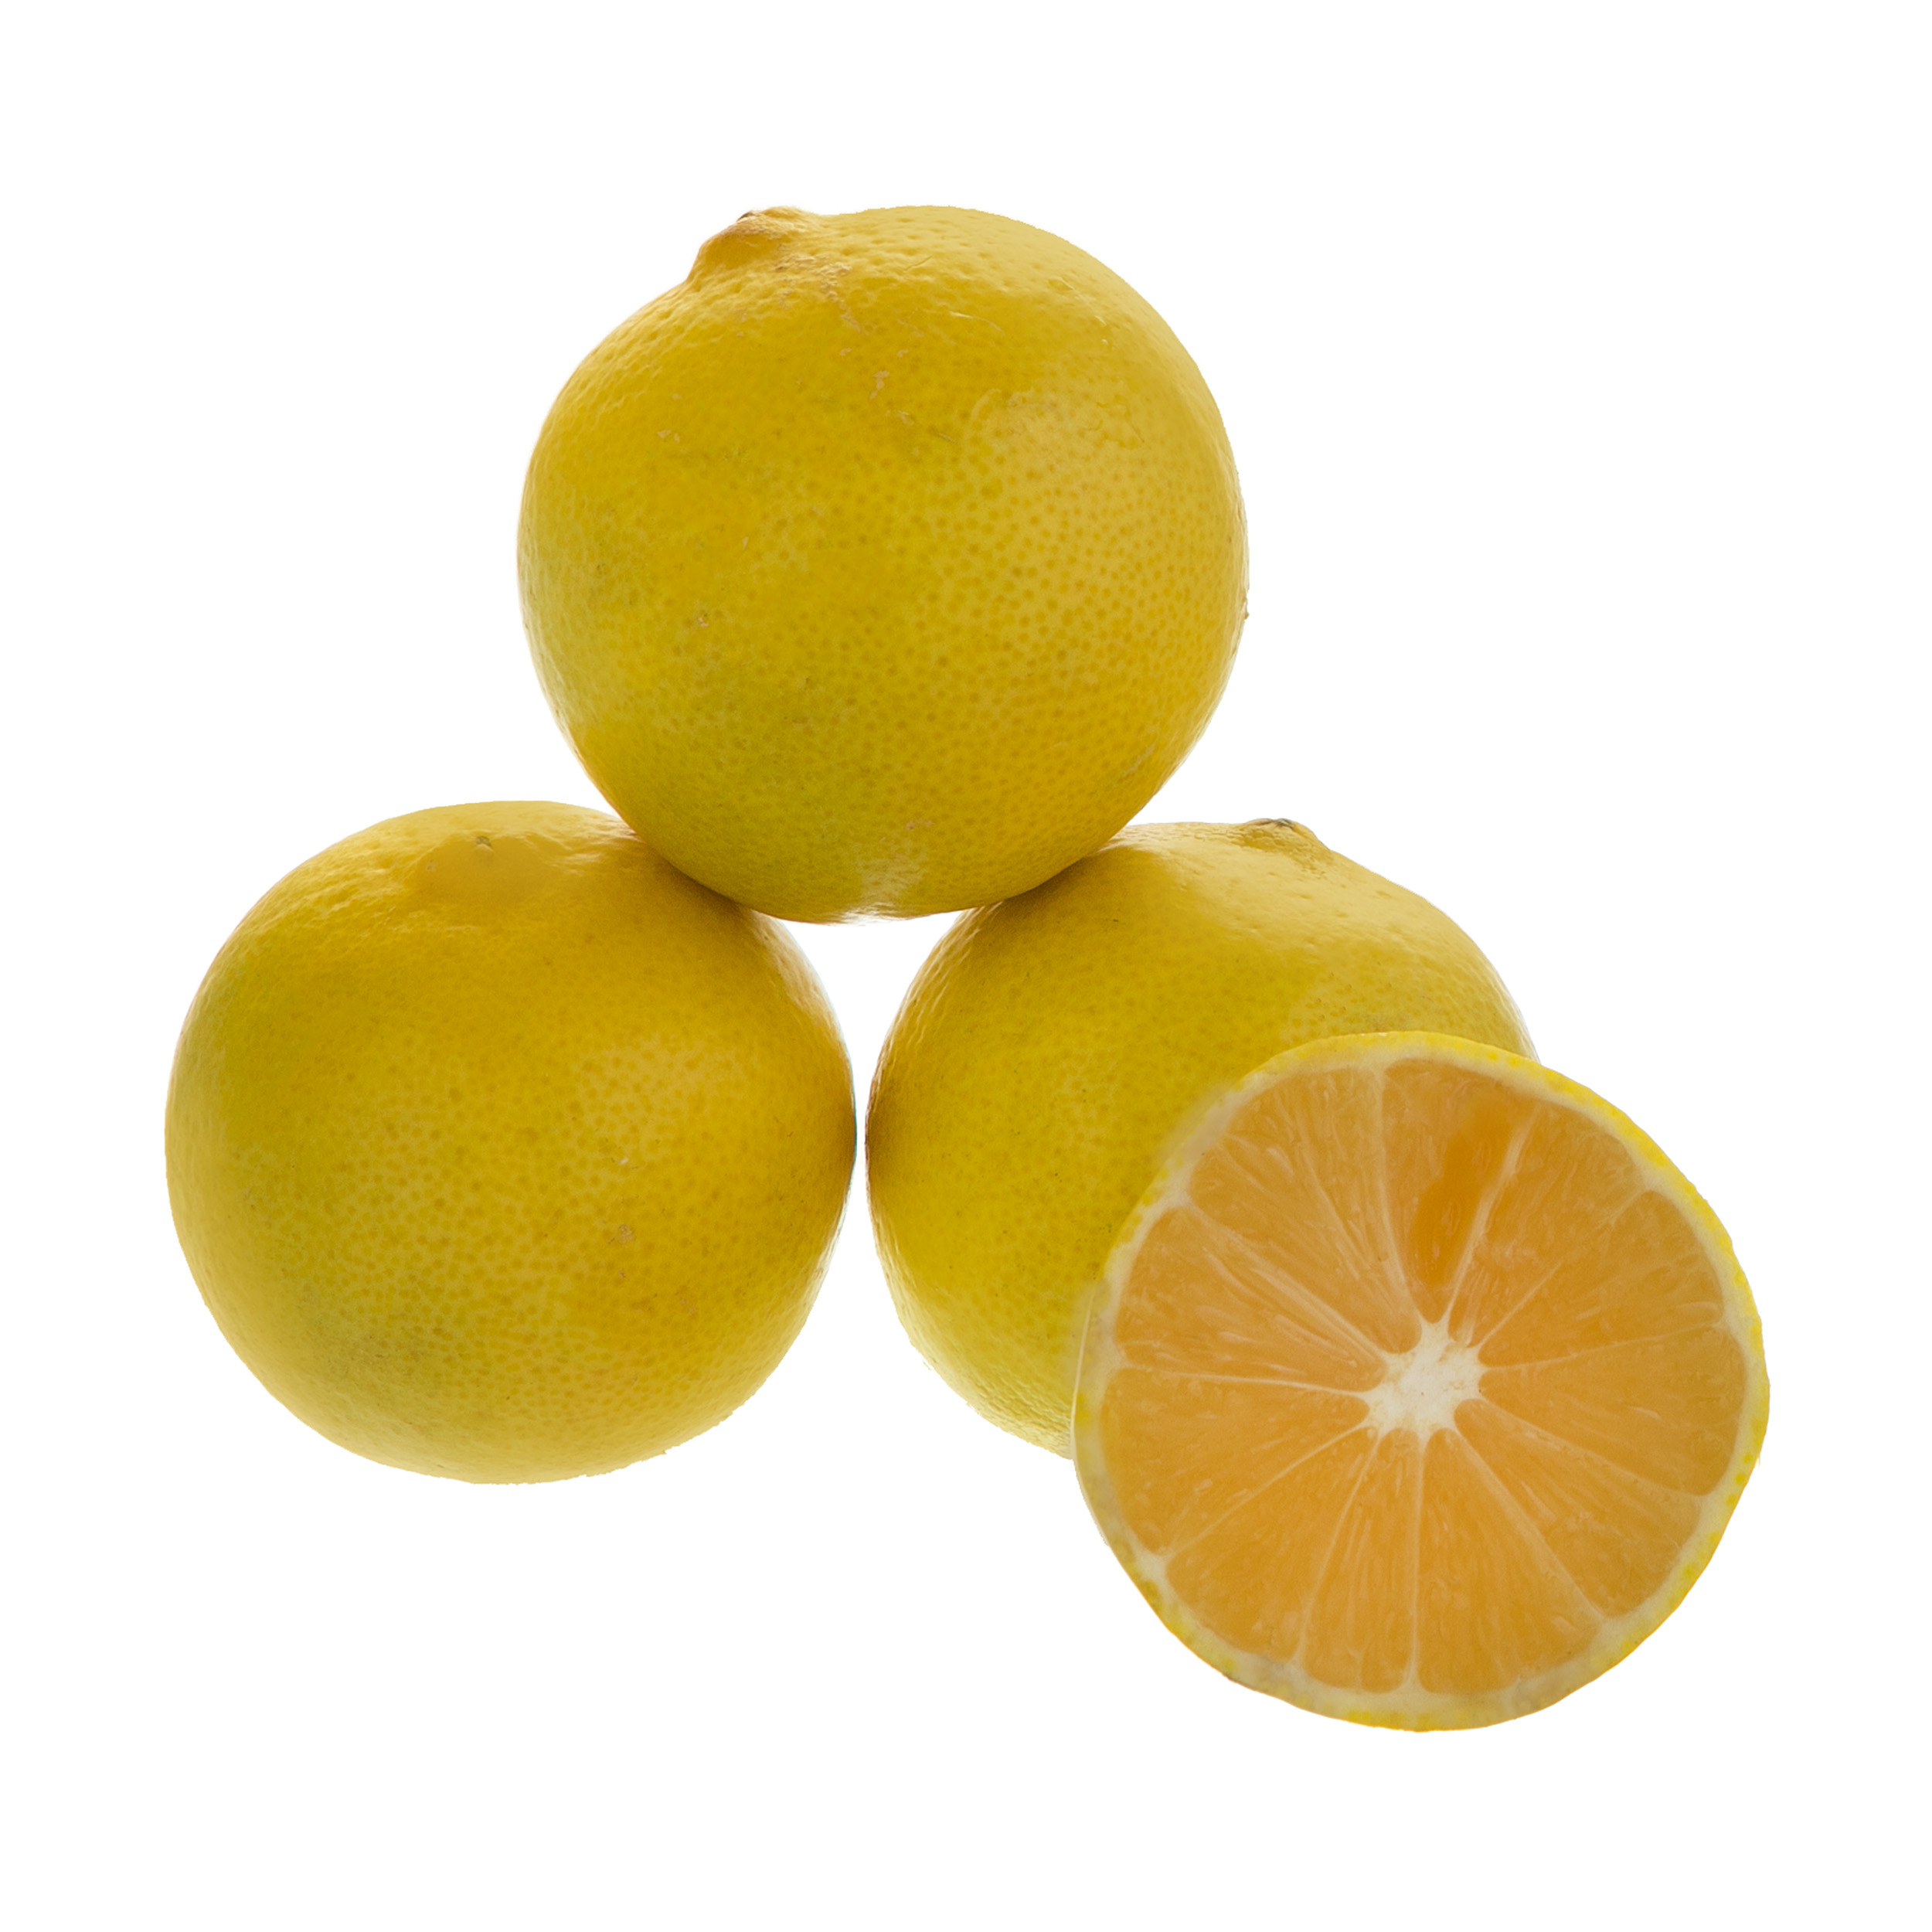 لیمو شیرین درجه یک - 10 کیلوگرم